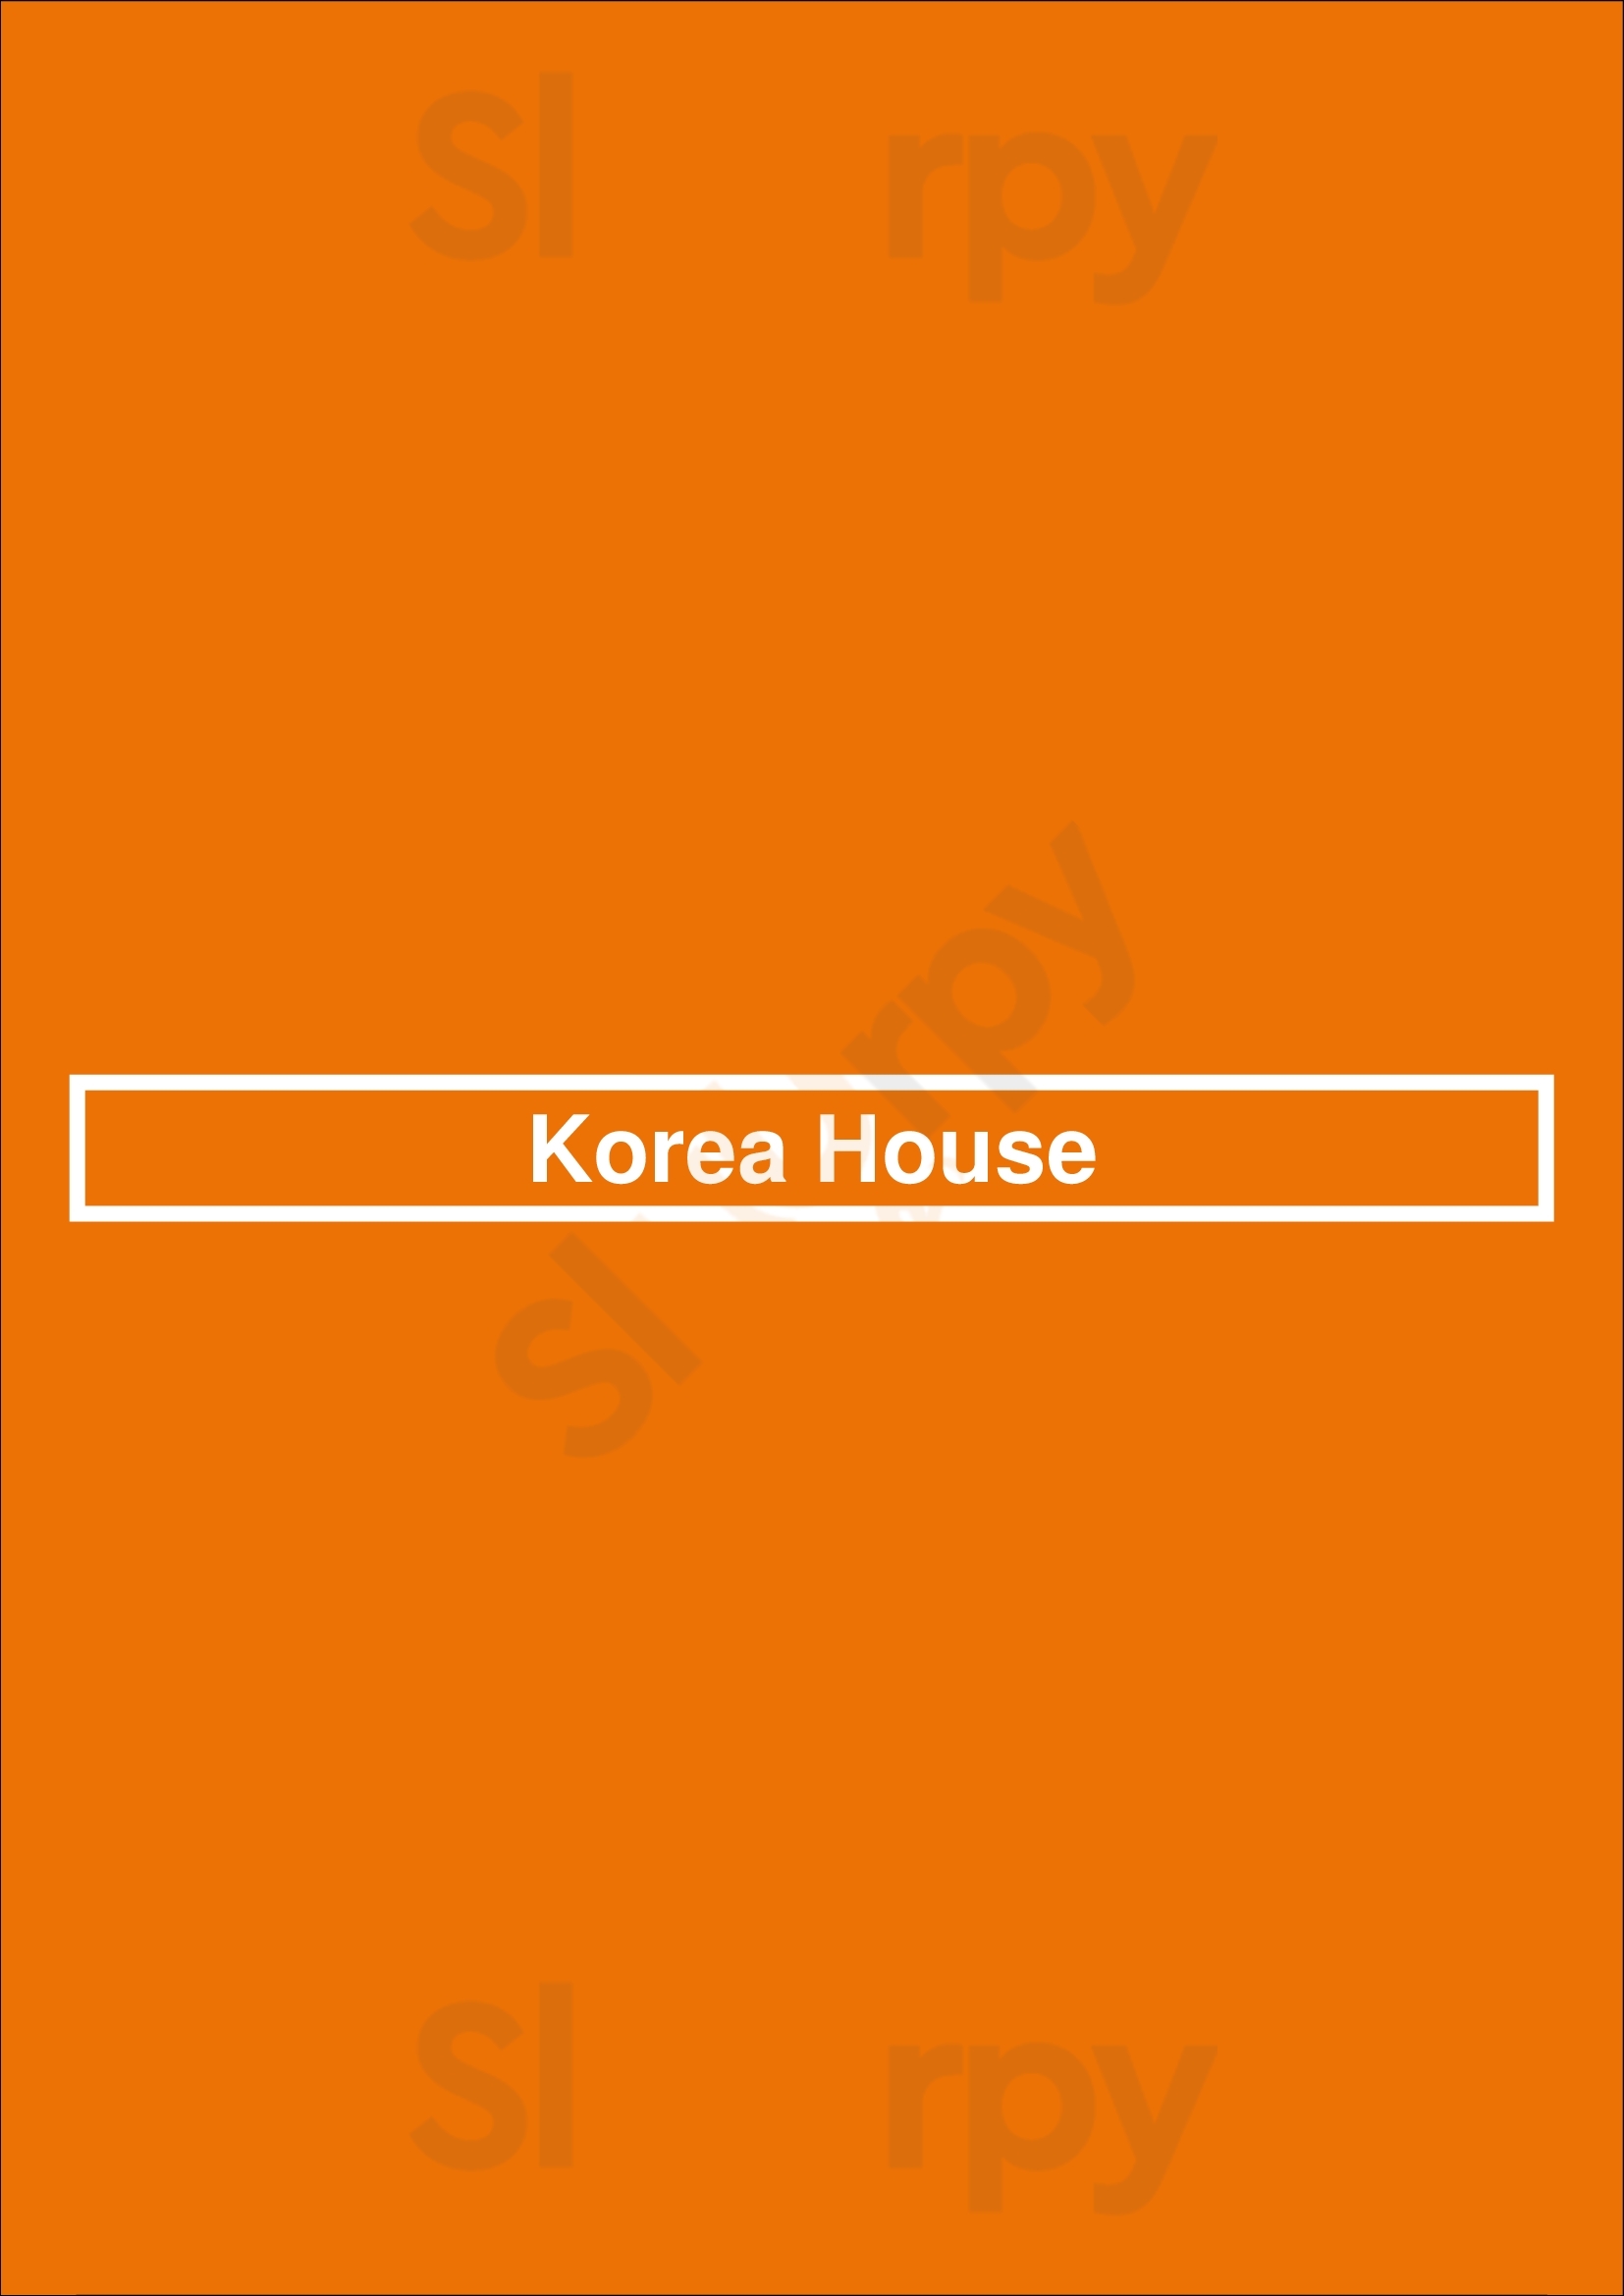 Korea House Cincinnati Menu - 1